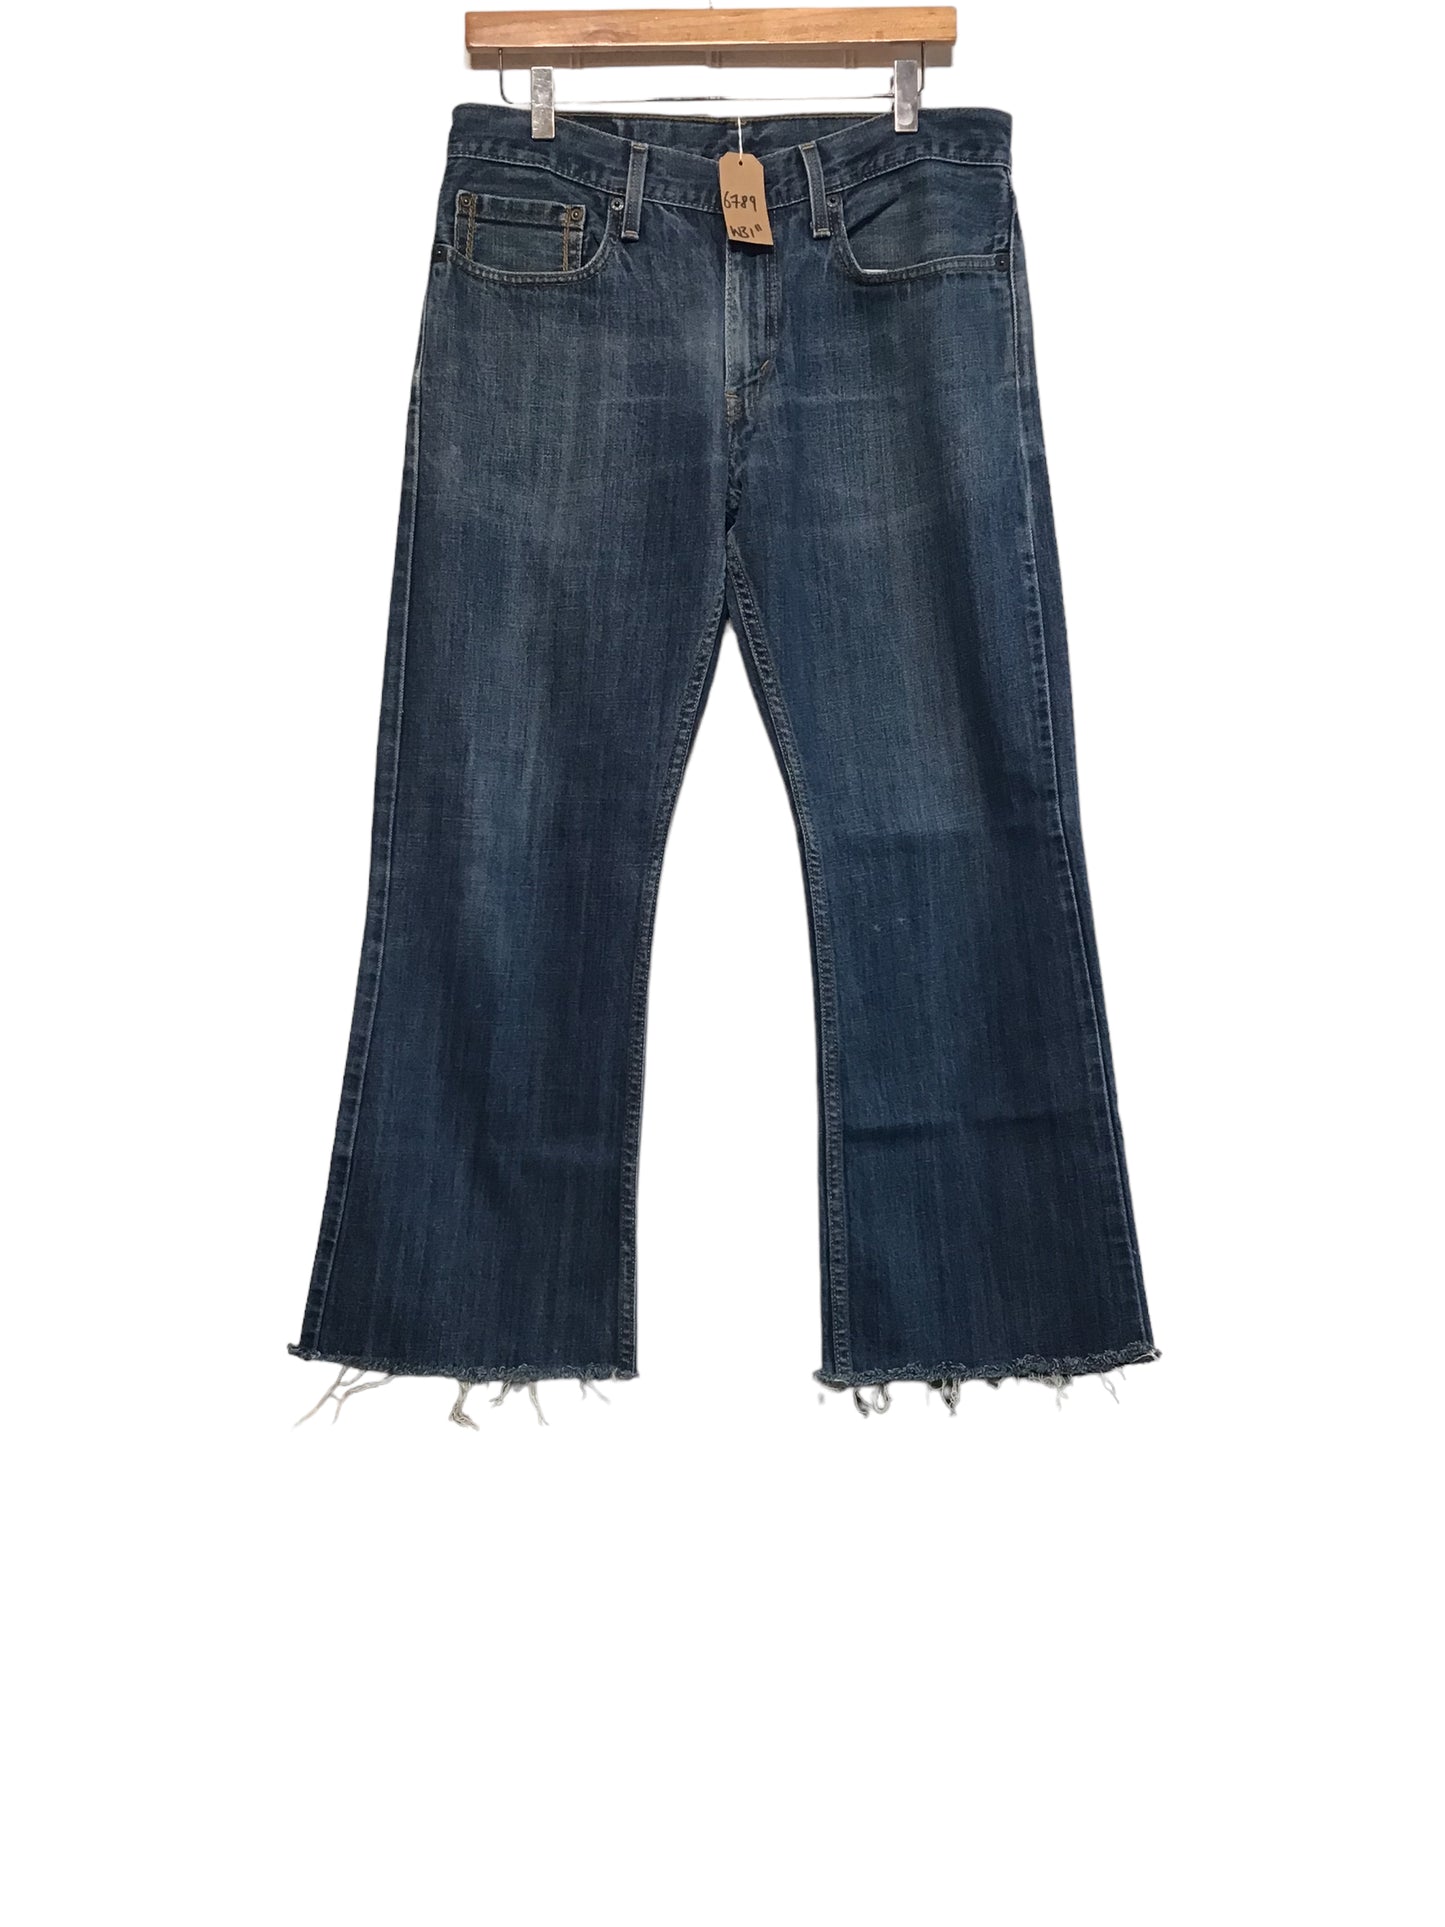 Levi 527 Jeans